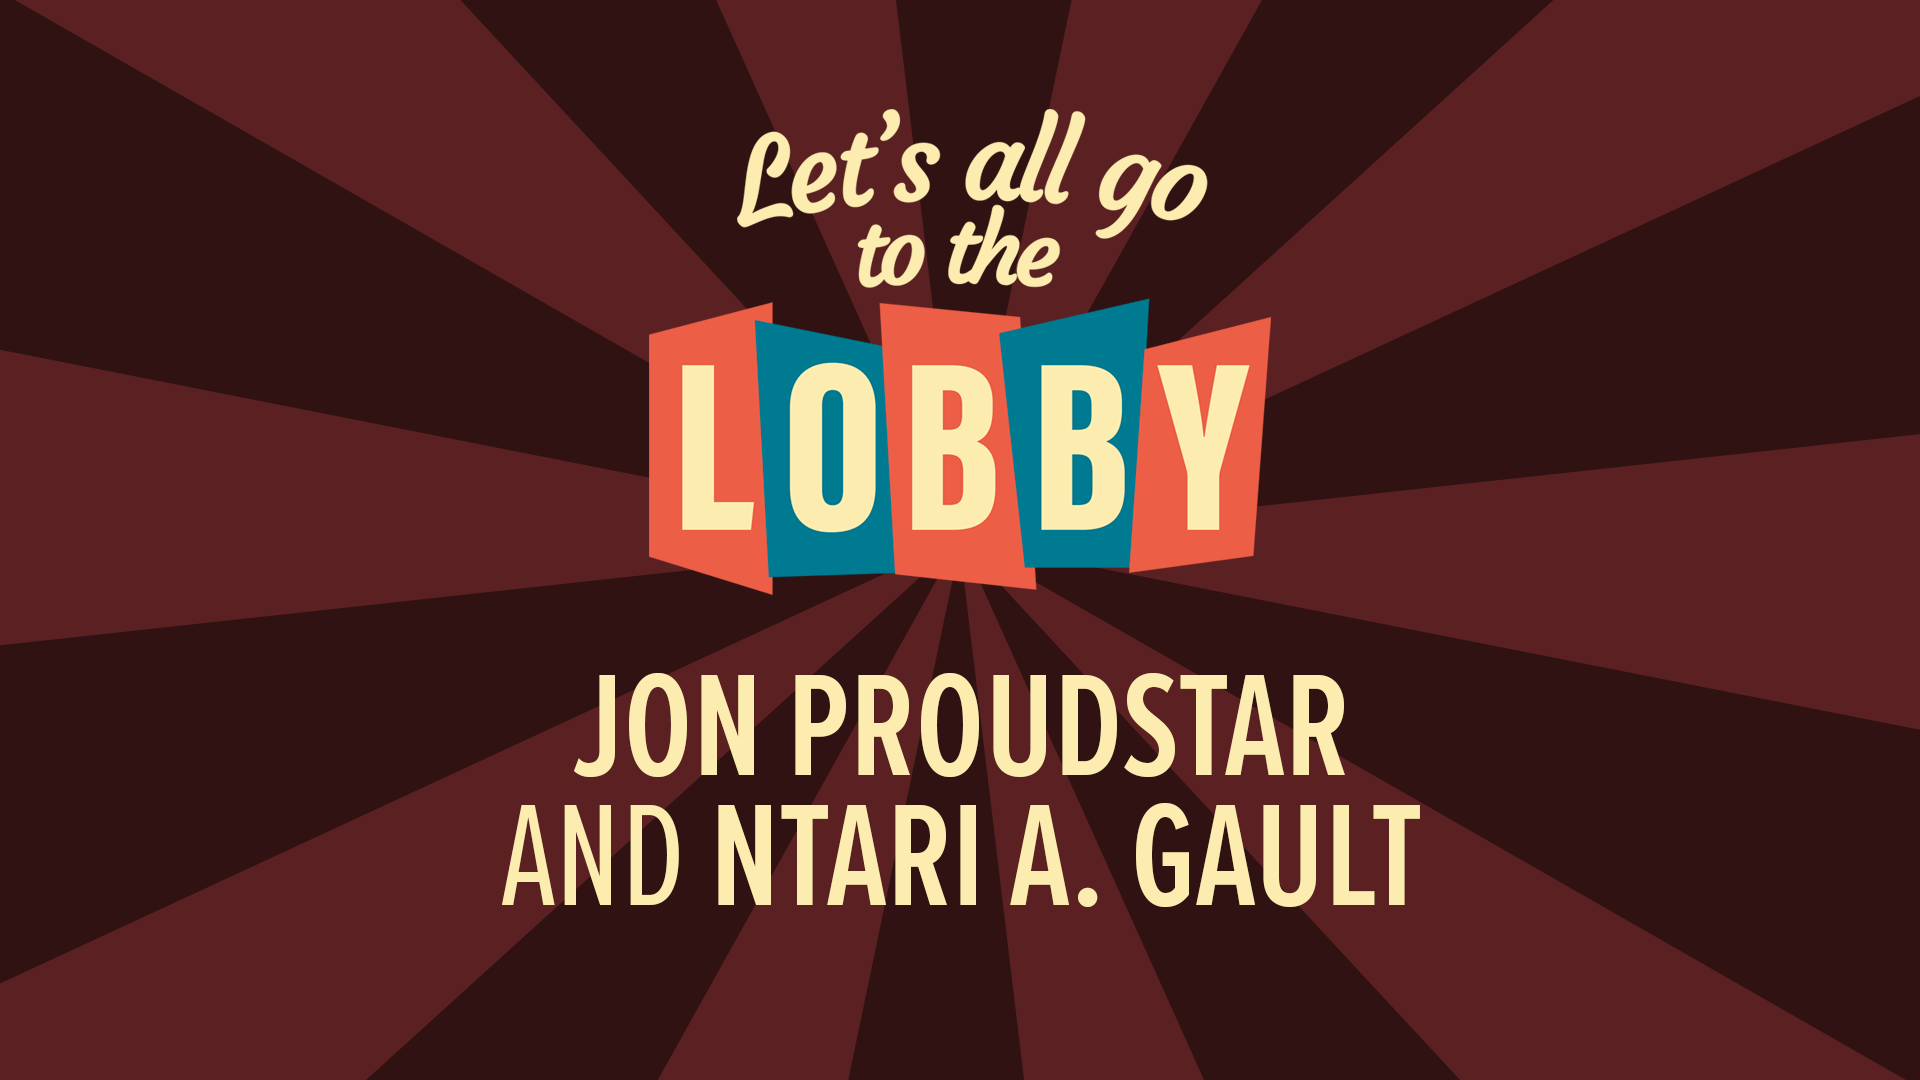 Jon Proudstar and Ntari A. Gault